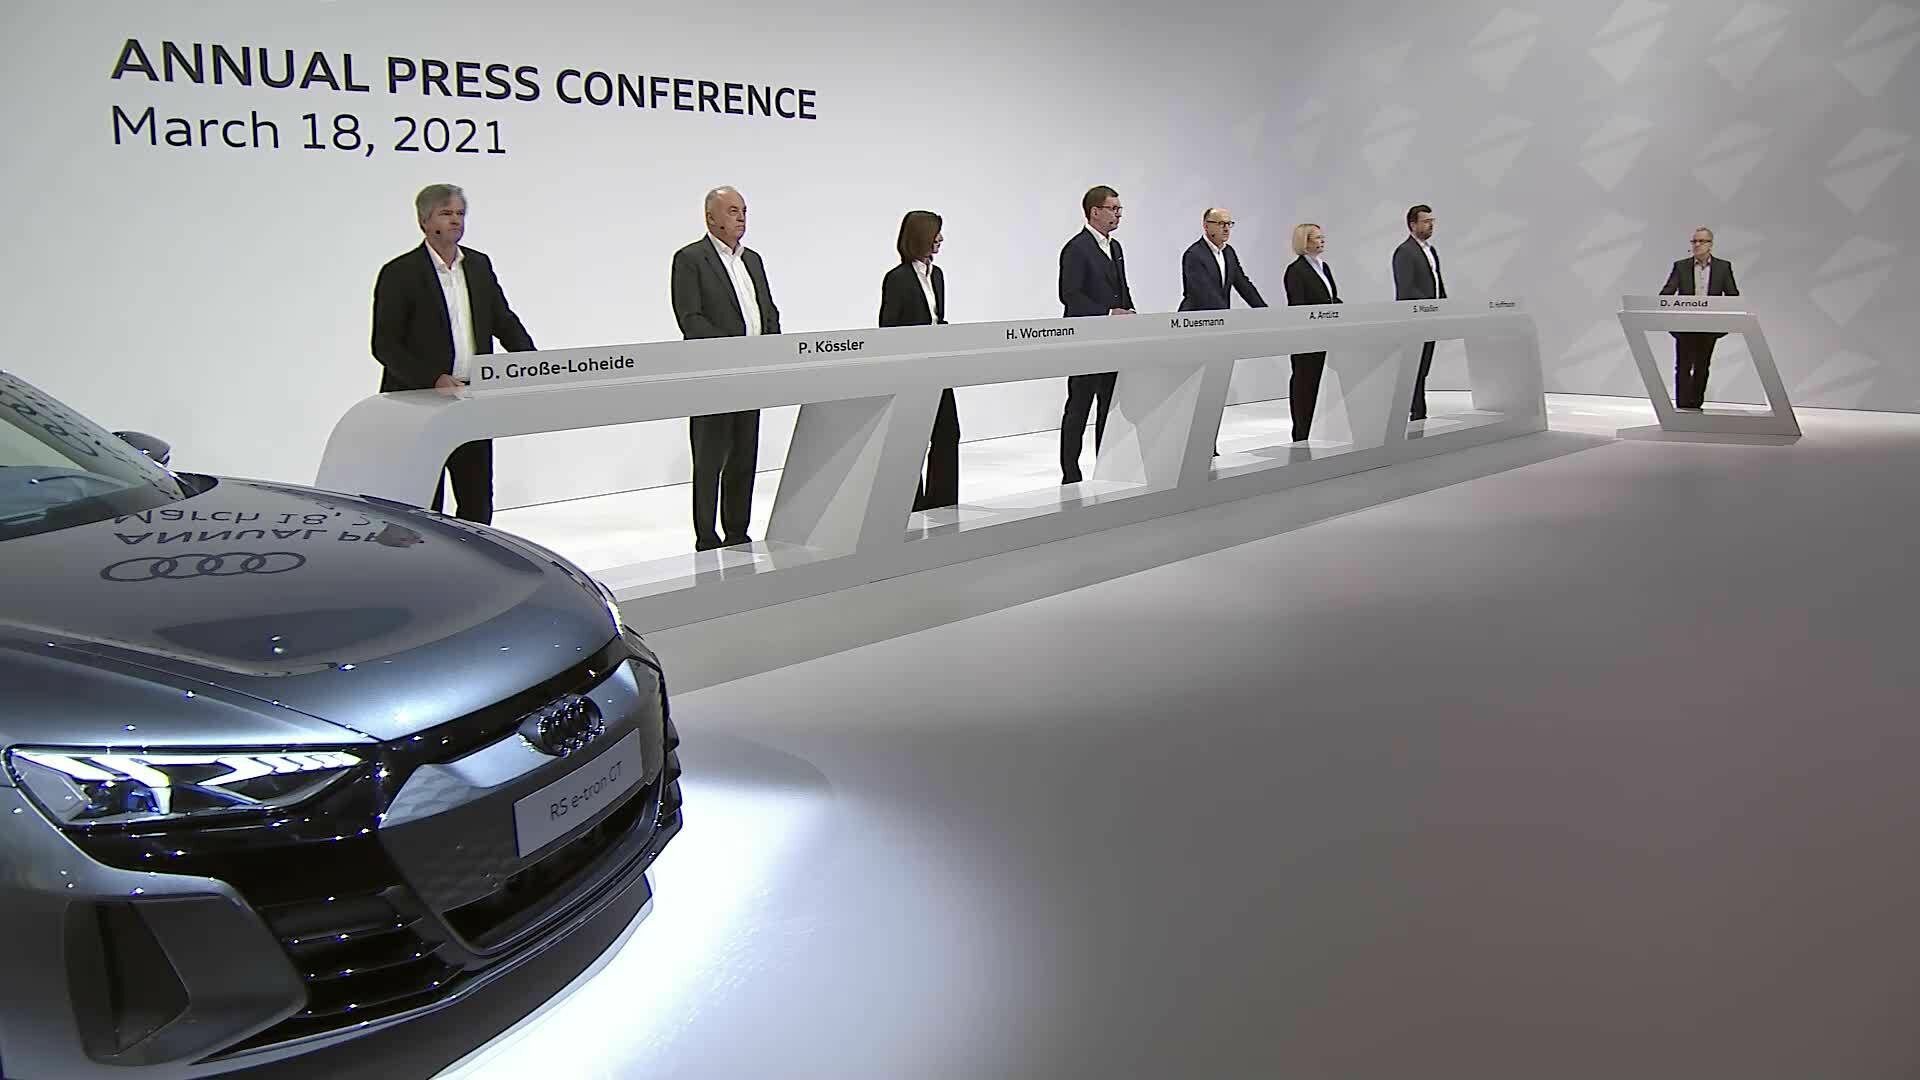 Audi Annual Press Conference 2021 Recording